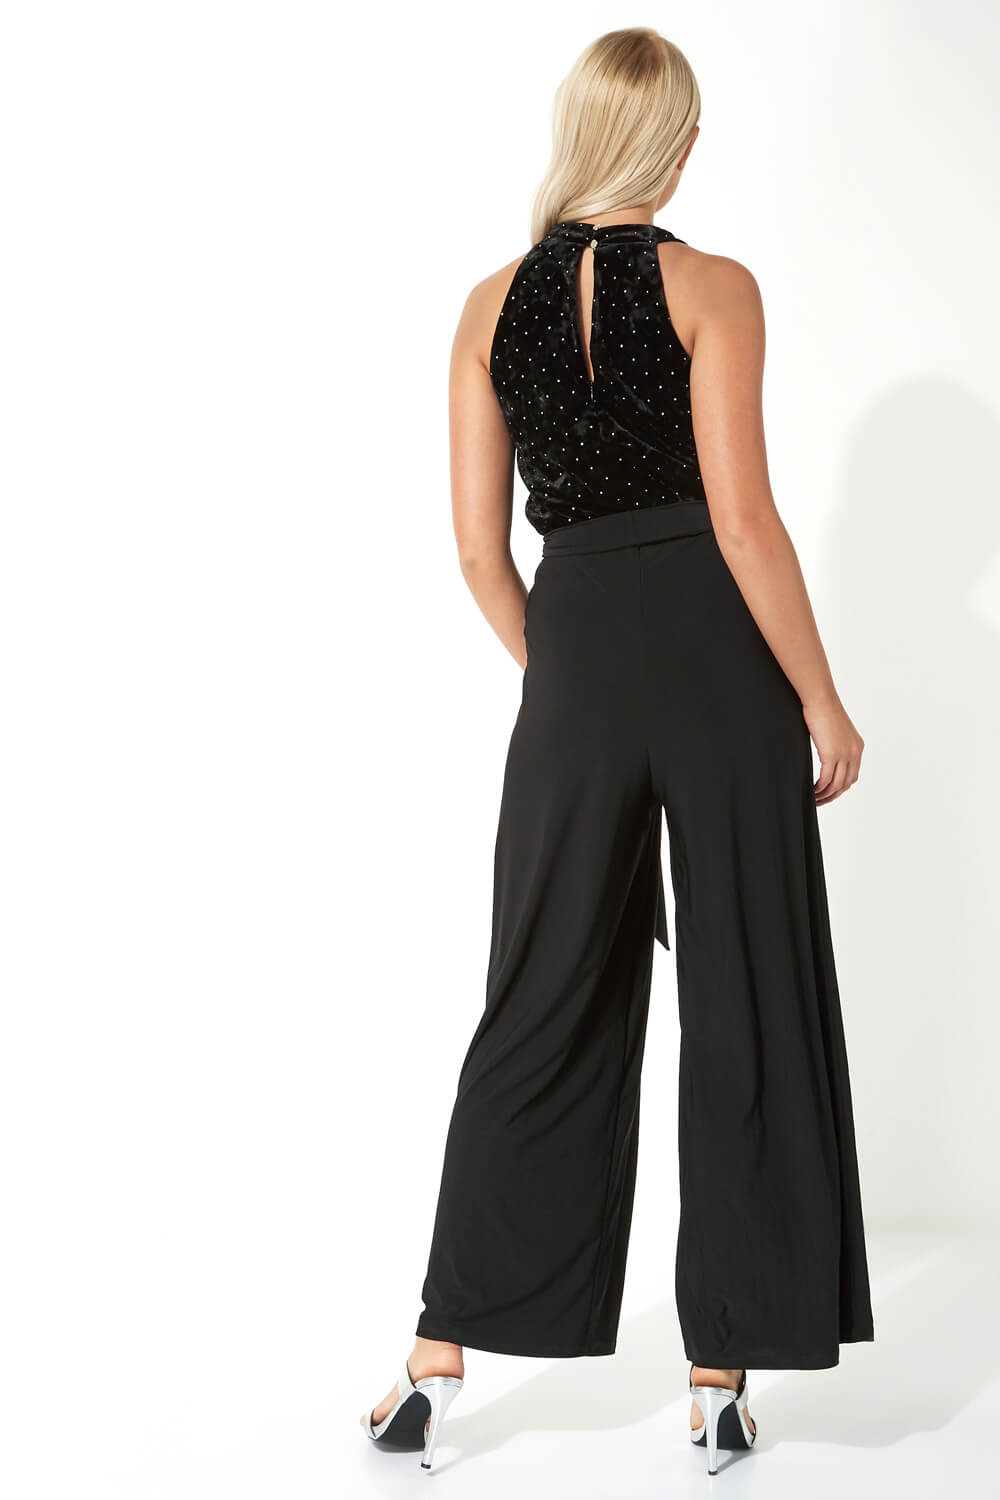 Black Embellished Velvet V-Neck Jumpsuit, Image 3 of 5